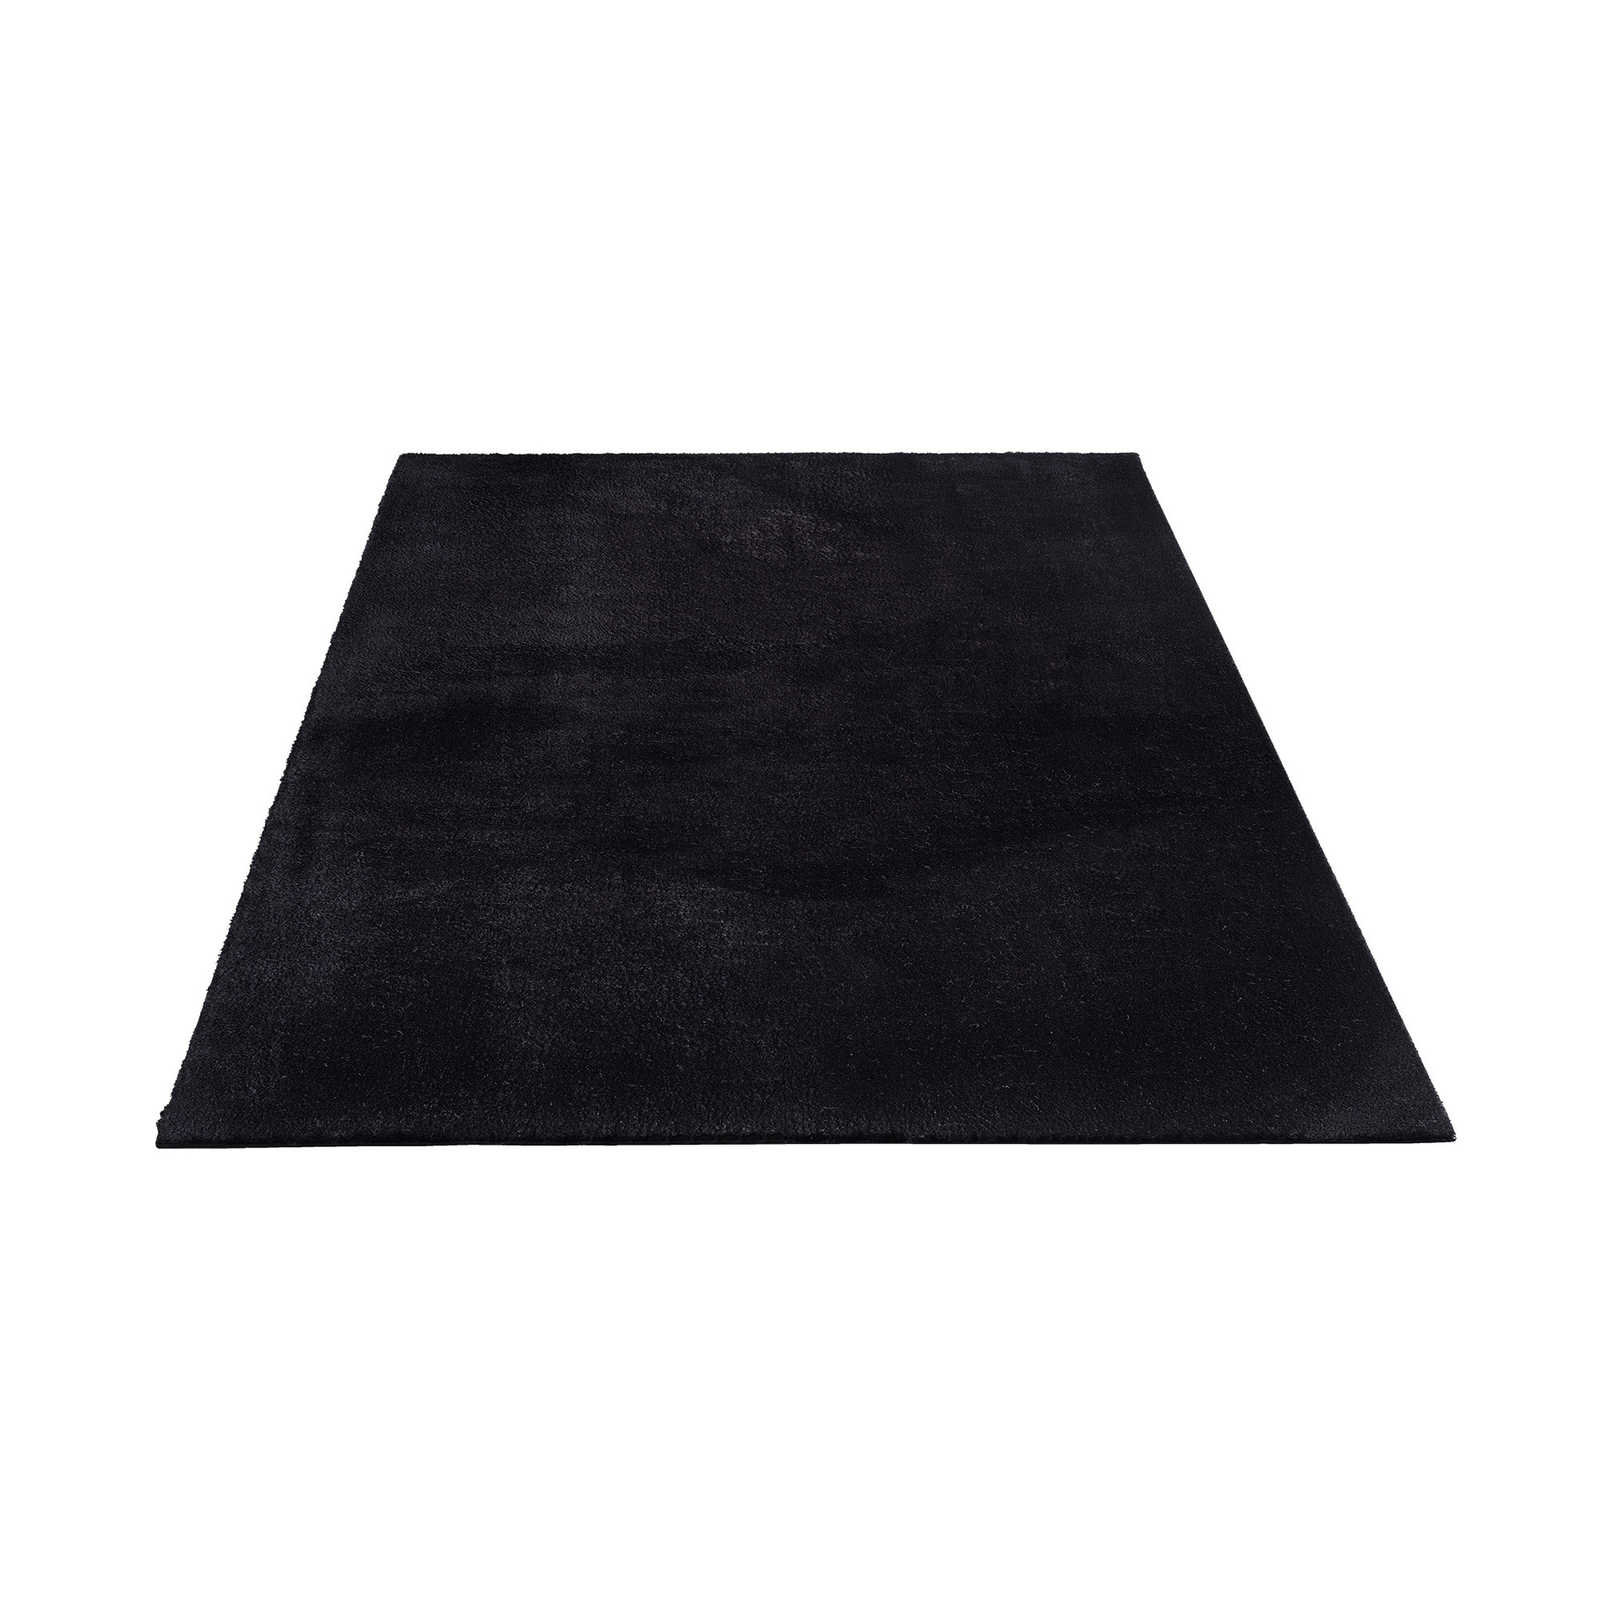 Velvety high pile carpet in black - 290 x 200 cm
